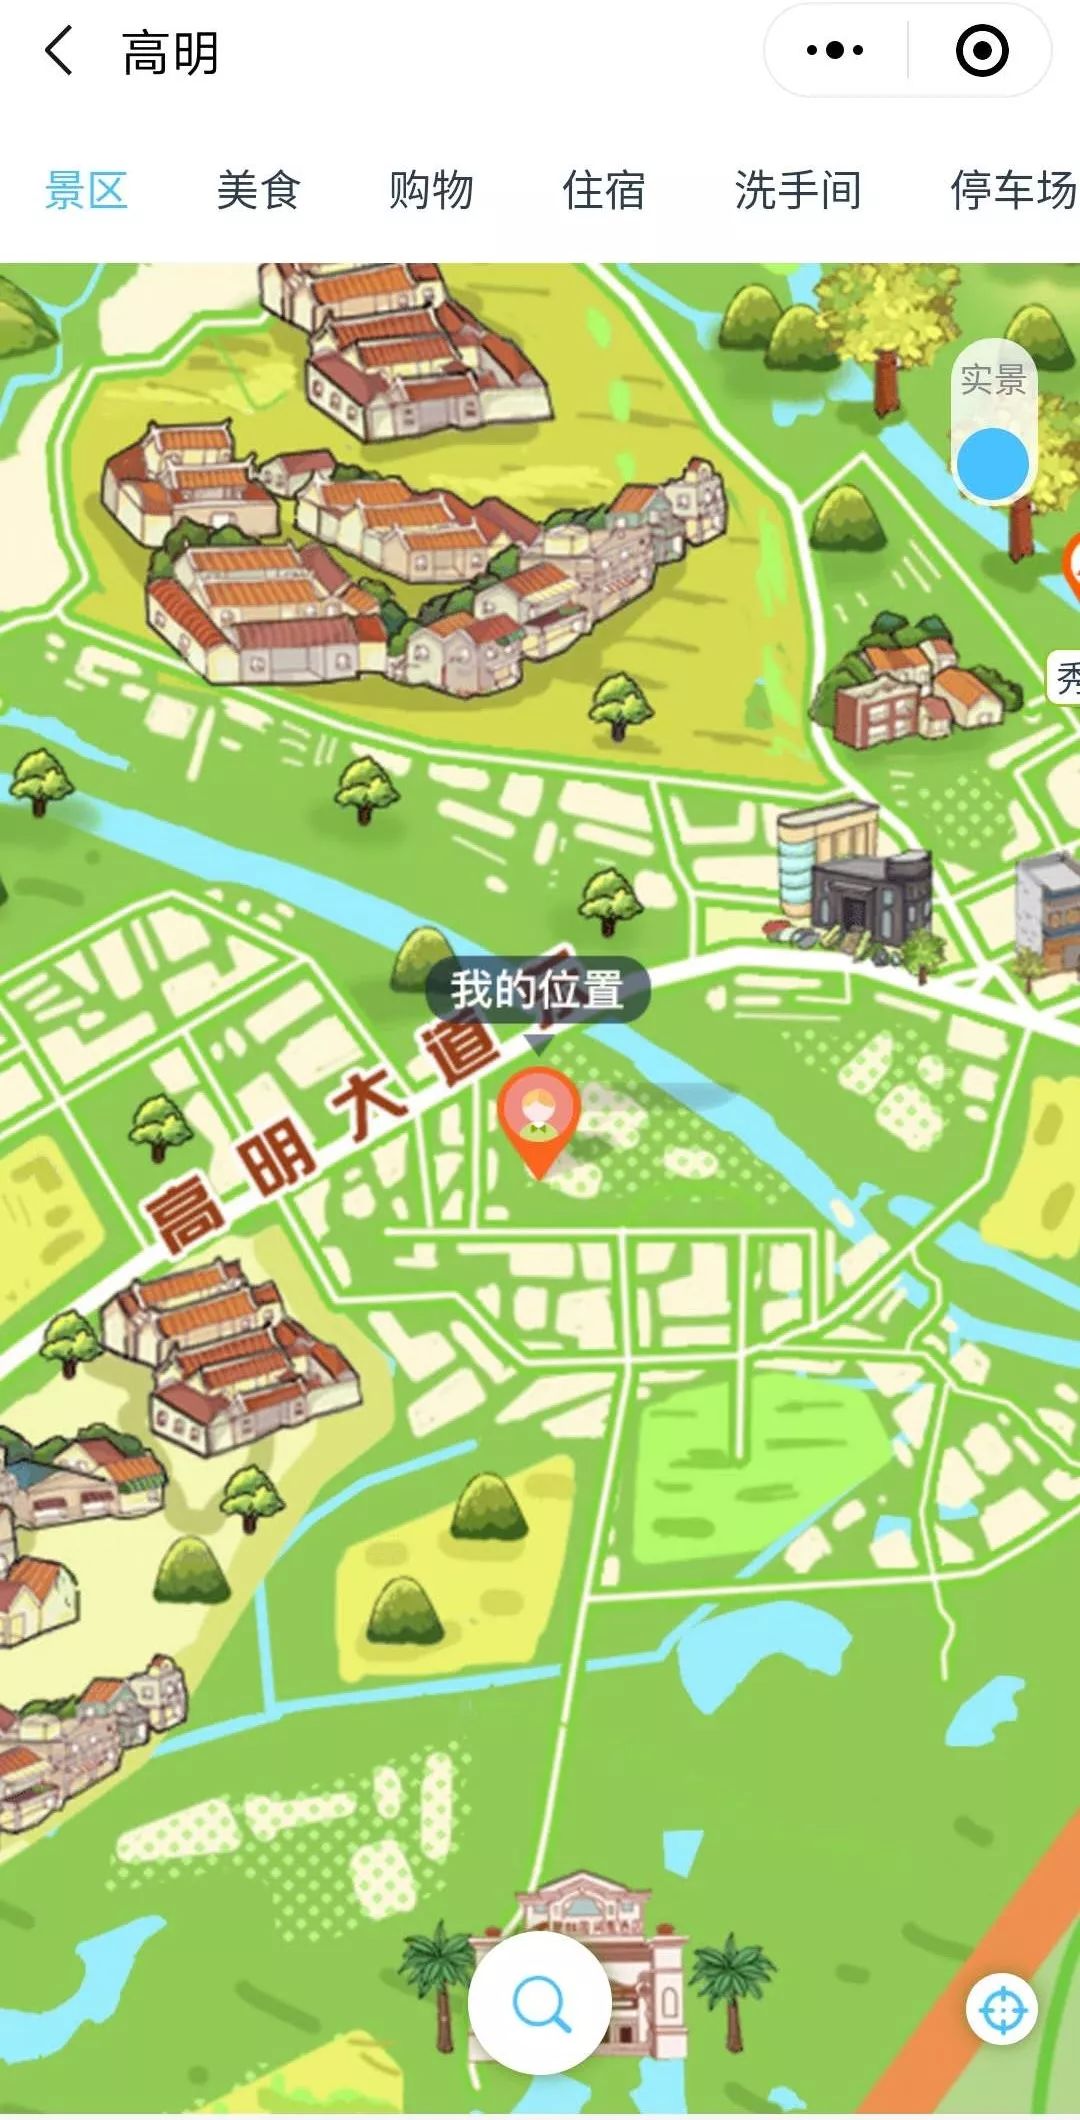 高明蘑菇小镇地图图片